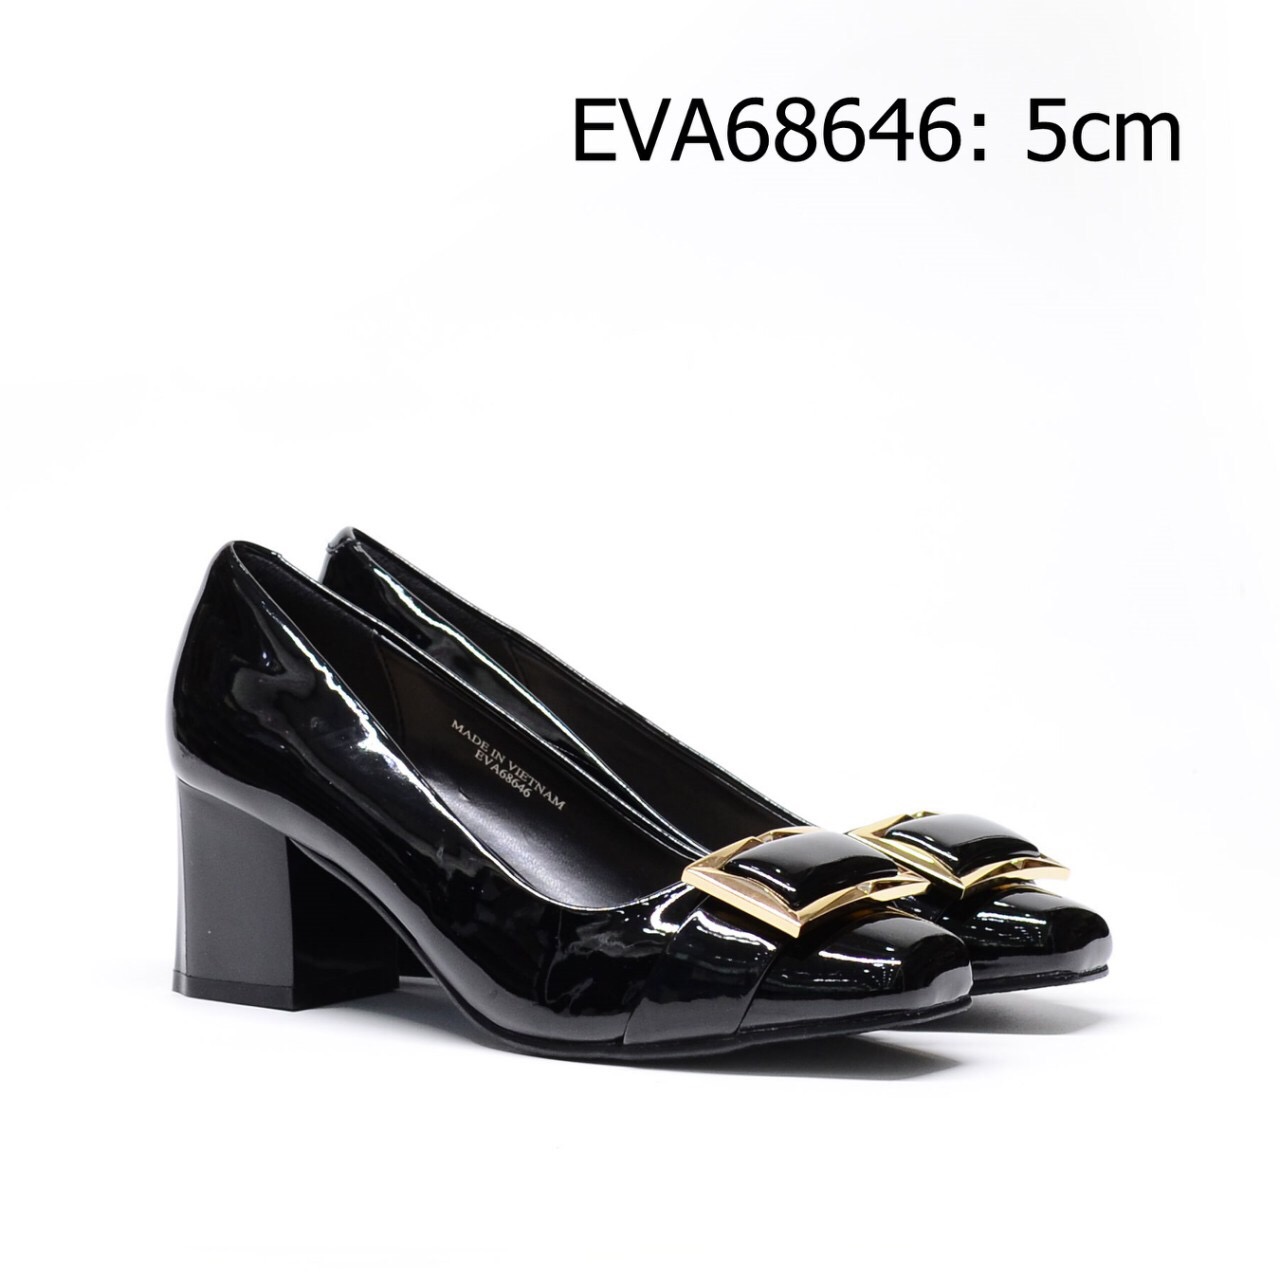 Giày công sở nữ EVA69646 da bóng sành điệu, phong cách phối nơ vuông mới